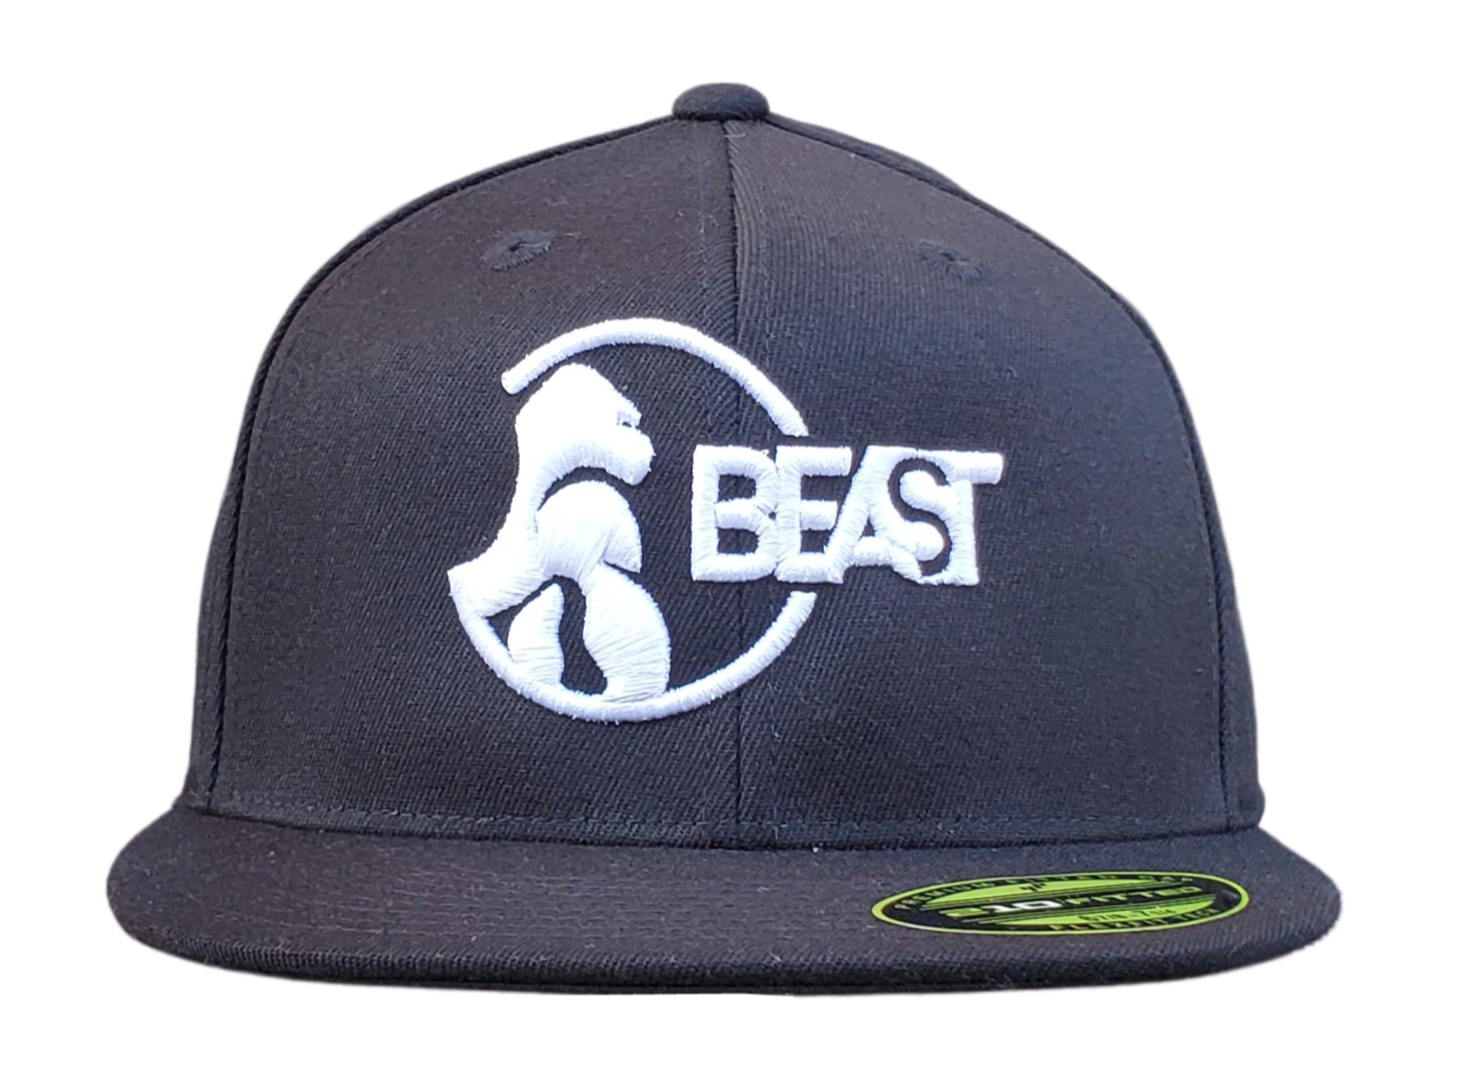 Boston Bruins Flex Fit Hat S/M